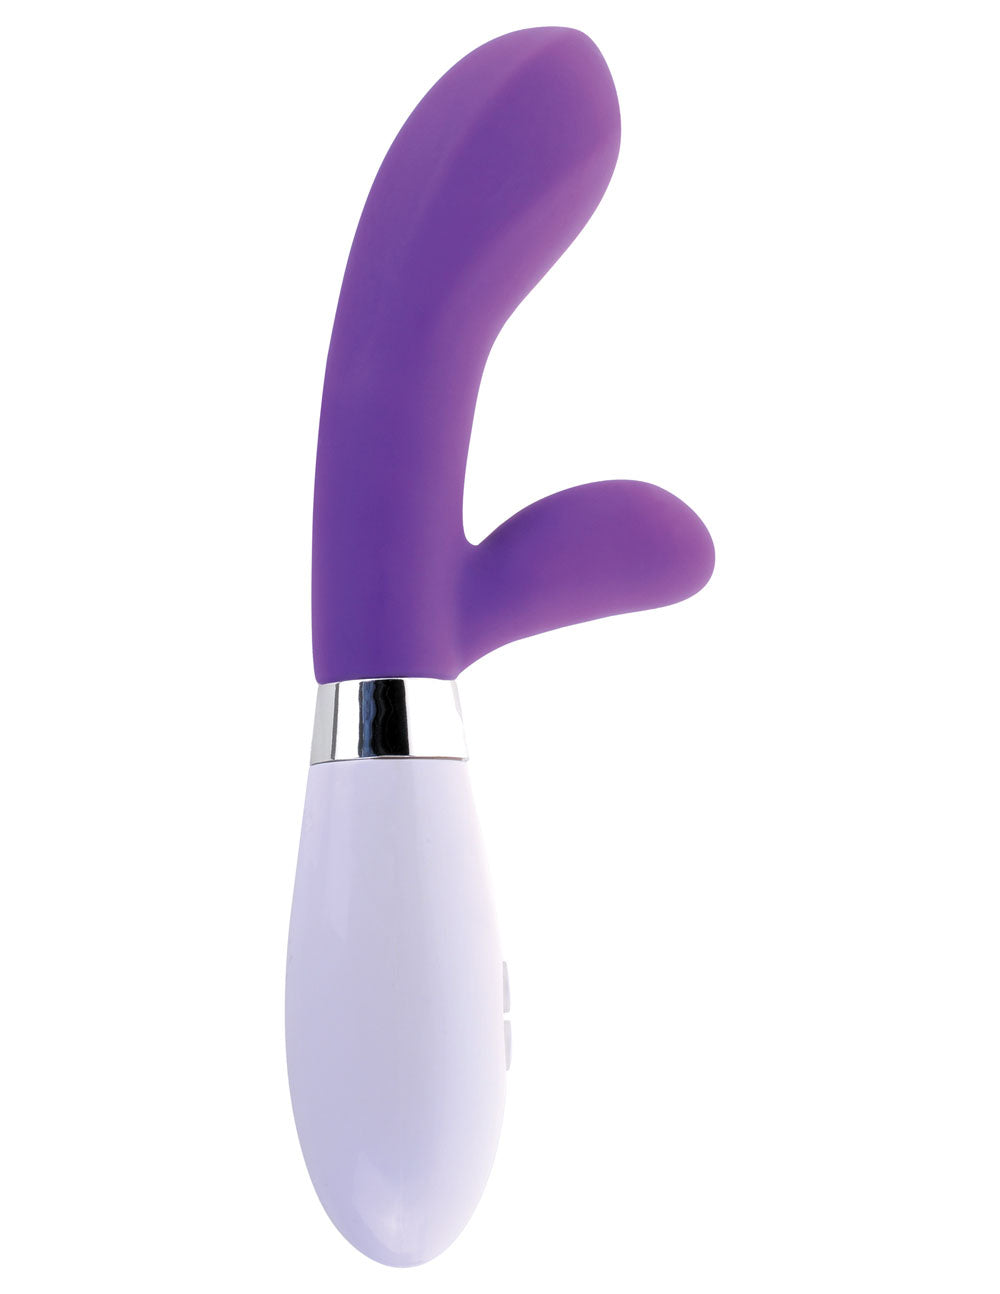 Silicone G-Spot Rabbit - Purple